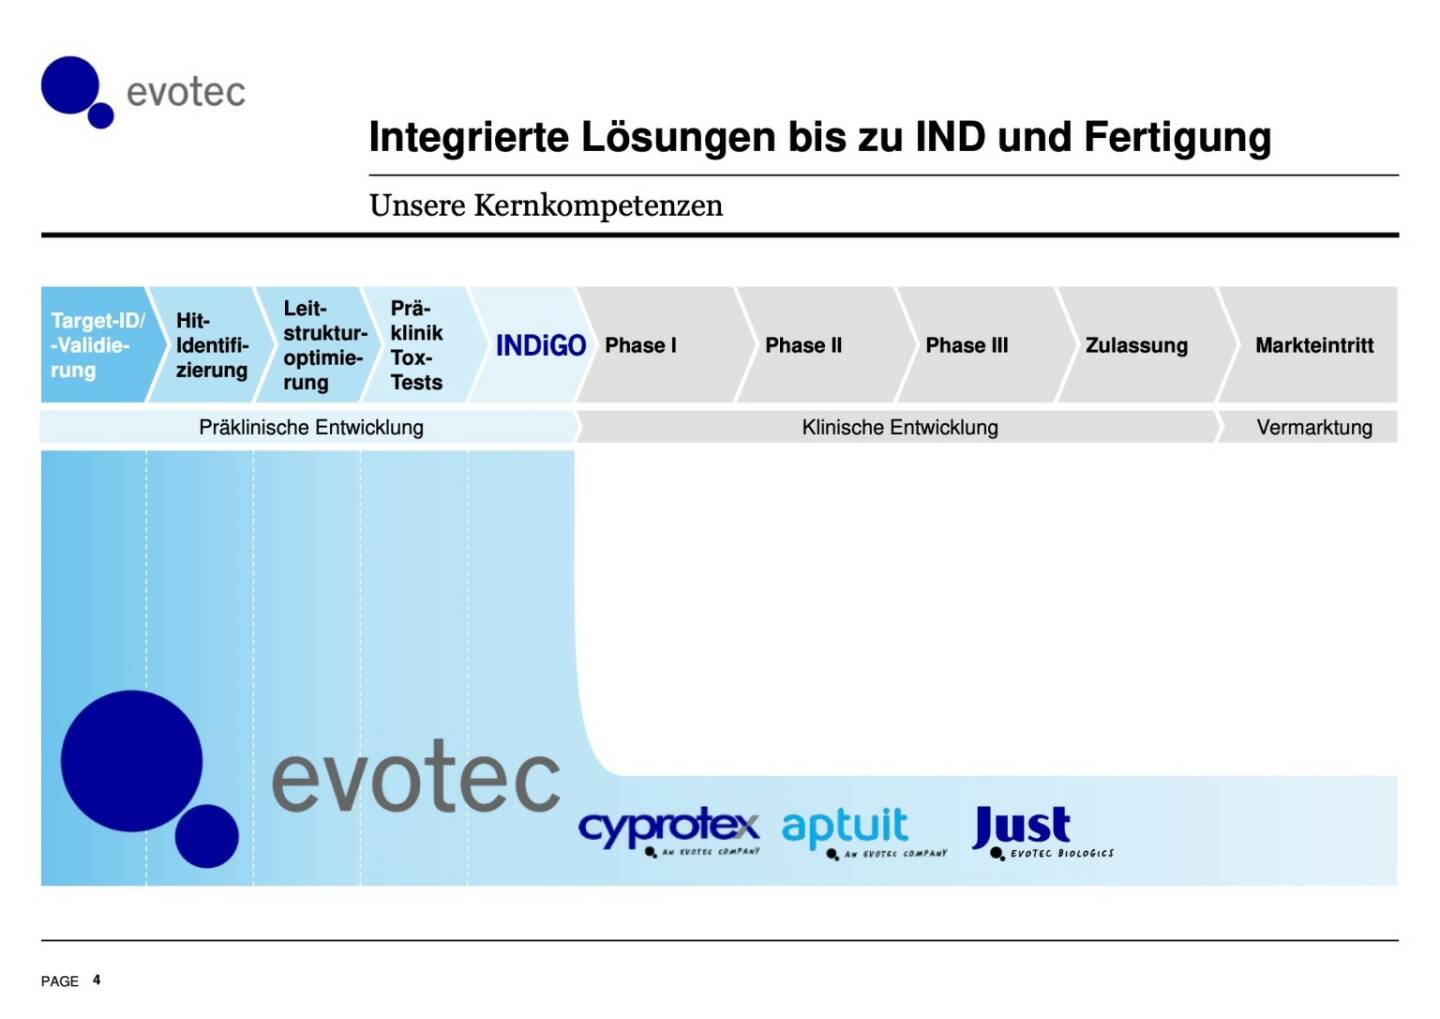 Evotec - Integrierte Lösungen bis zu IND und Fertigung